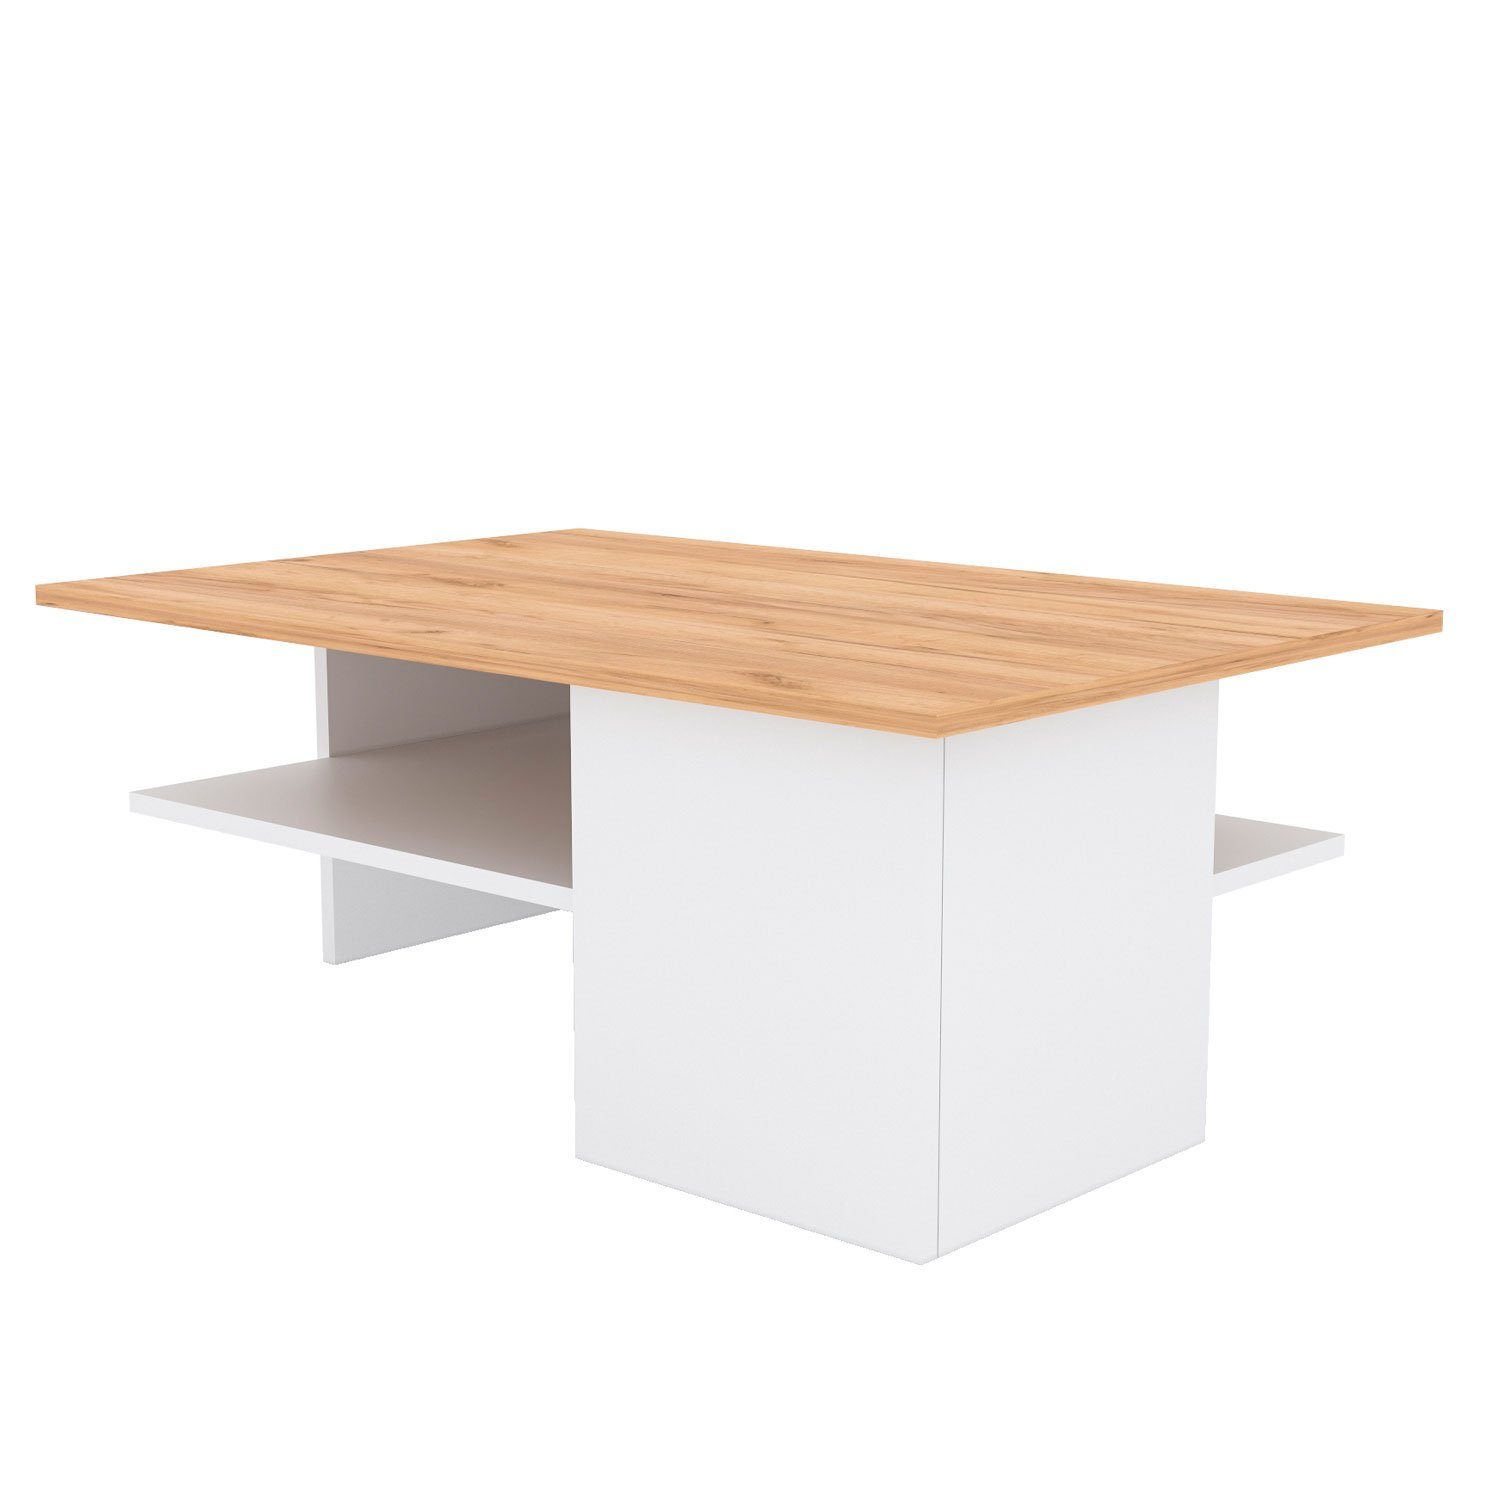 Beton Couchtisch Wohnzimmertisch Sofatisch Holz Natur Set) Homestyle4u (kein Tisch